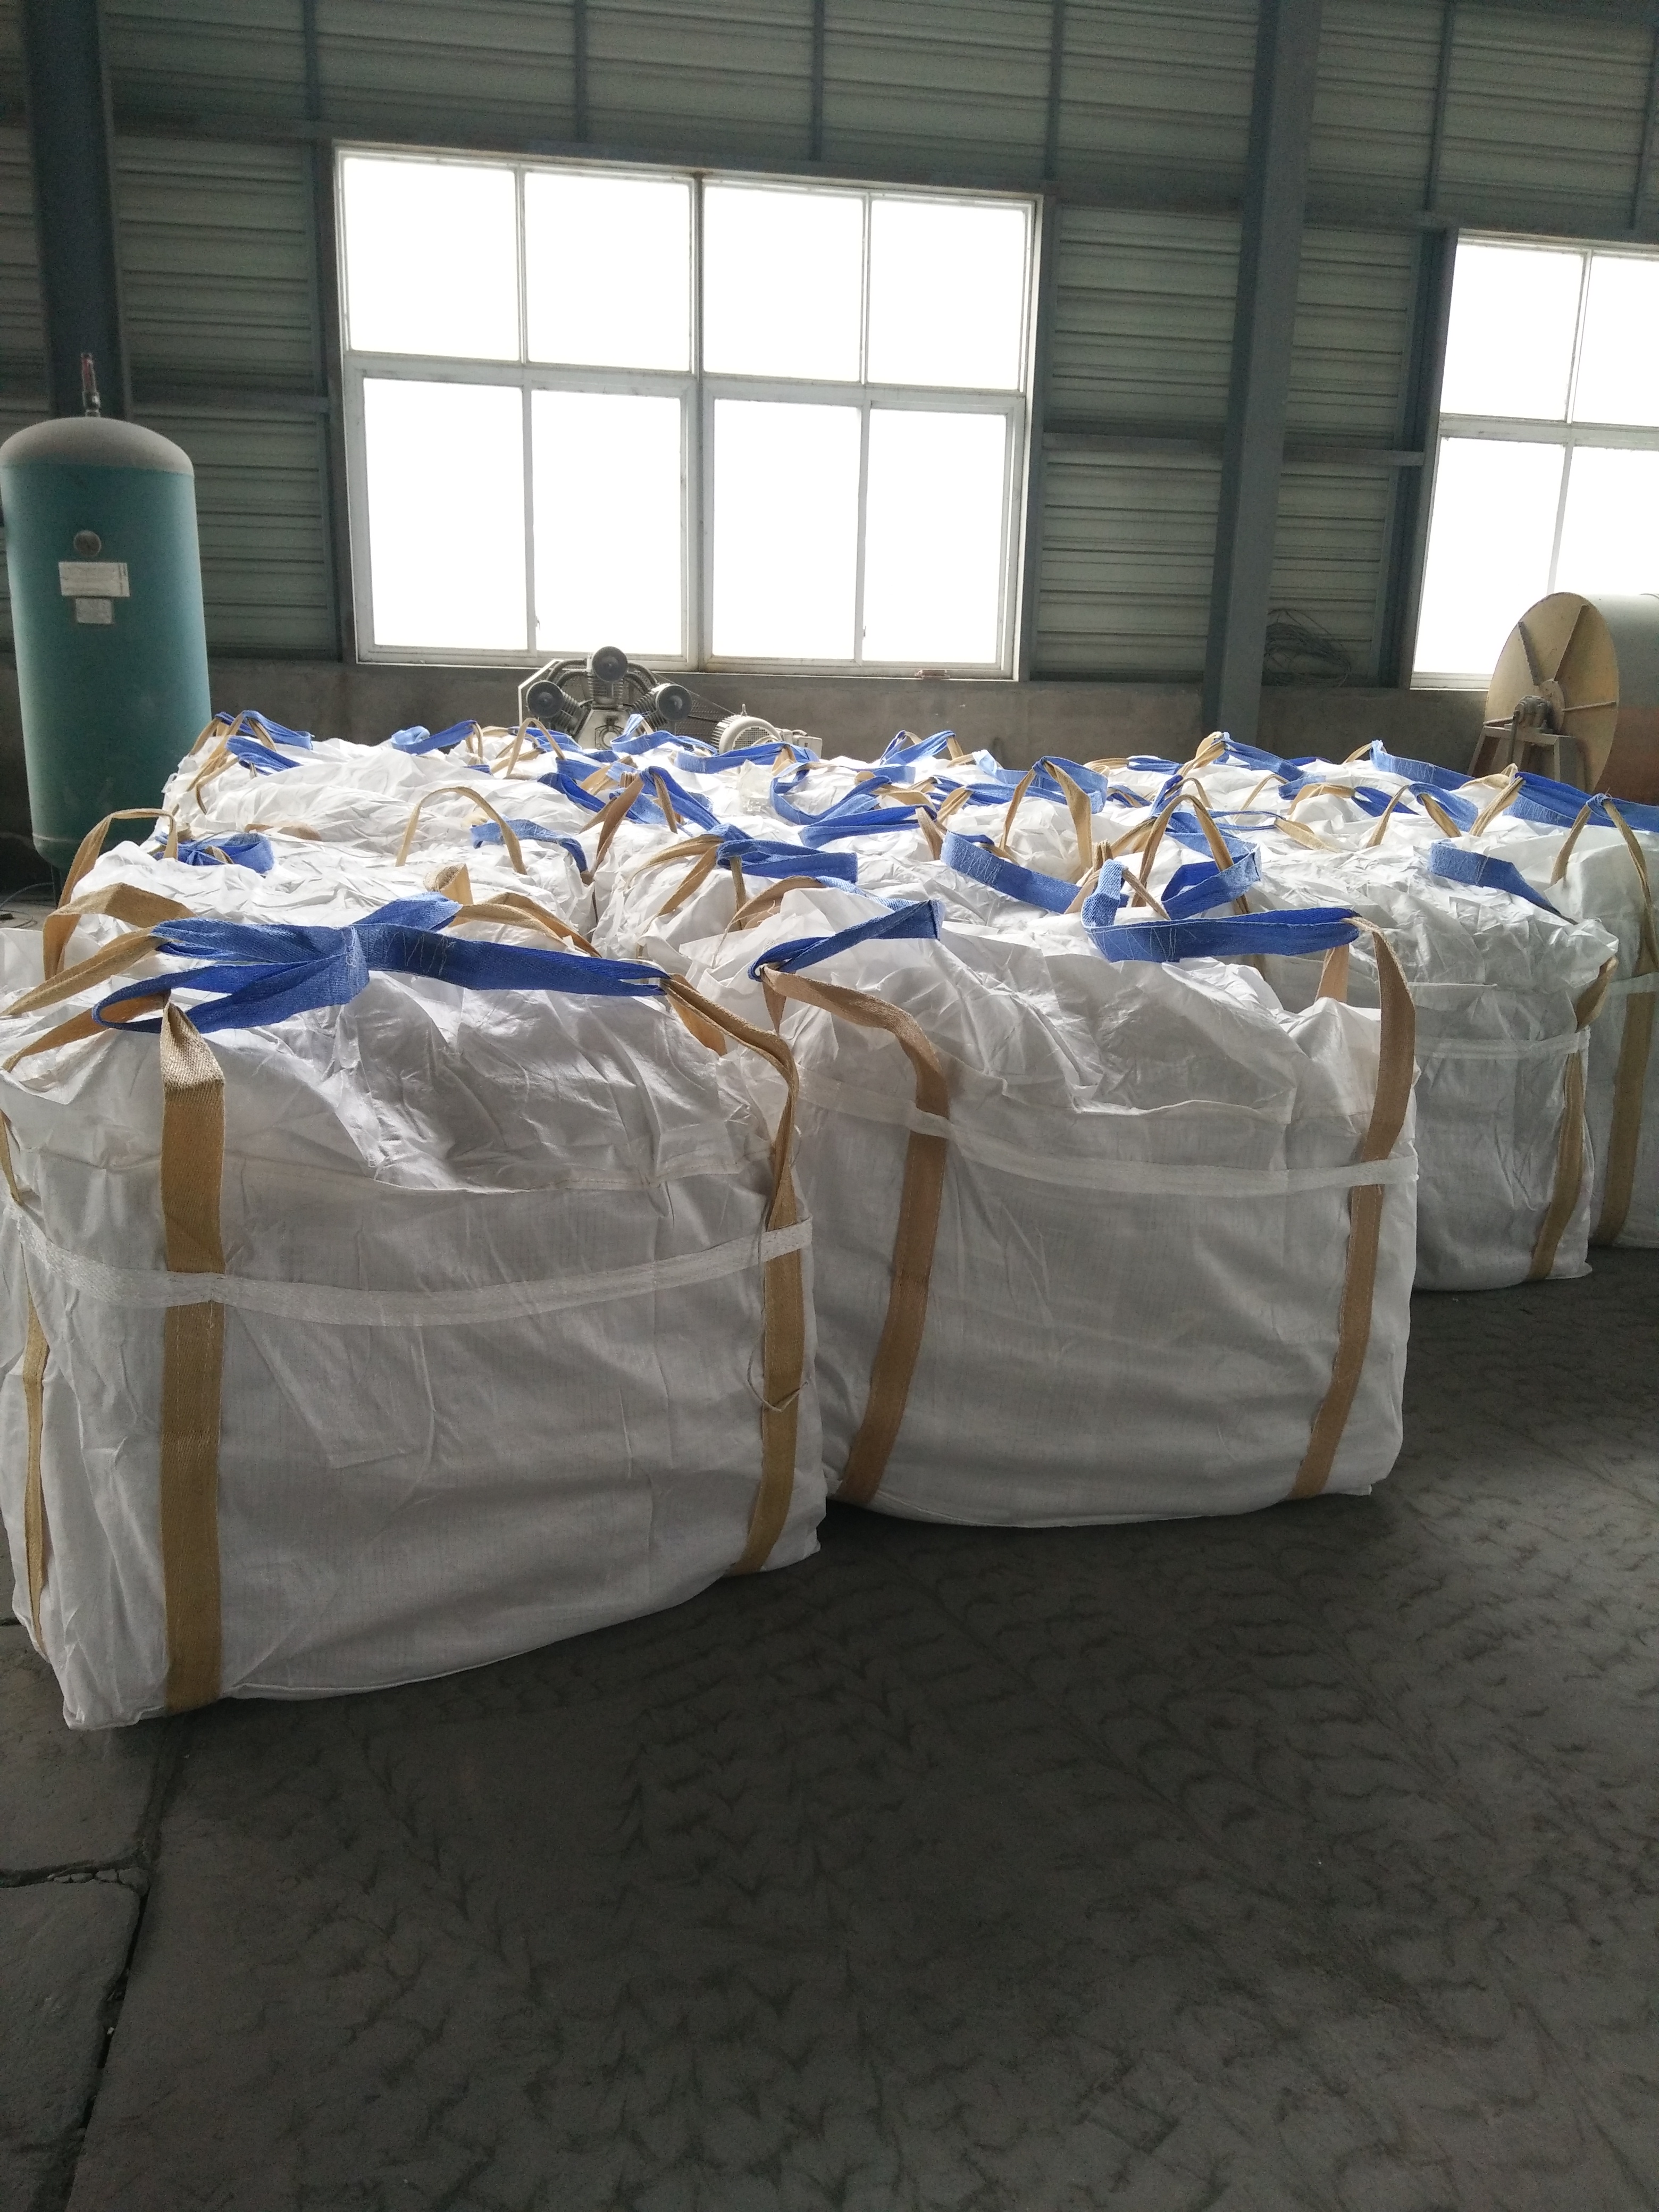 水泥编织袋 德州水泥编织袋供应商直销 水泥编织袋厂商批发价格